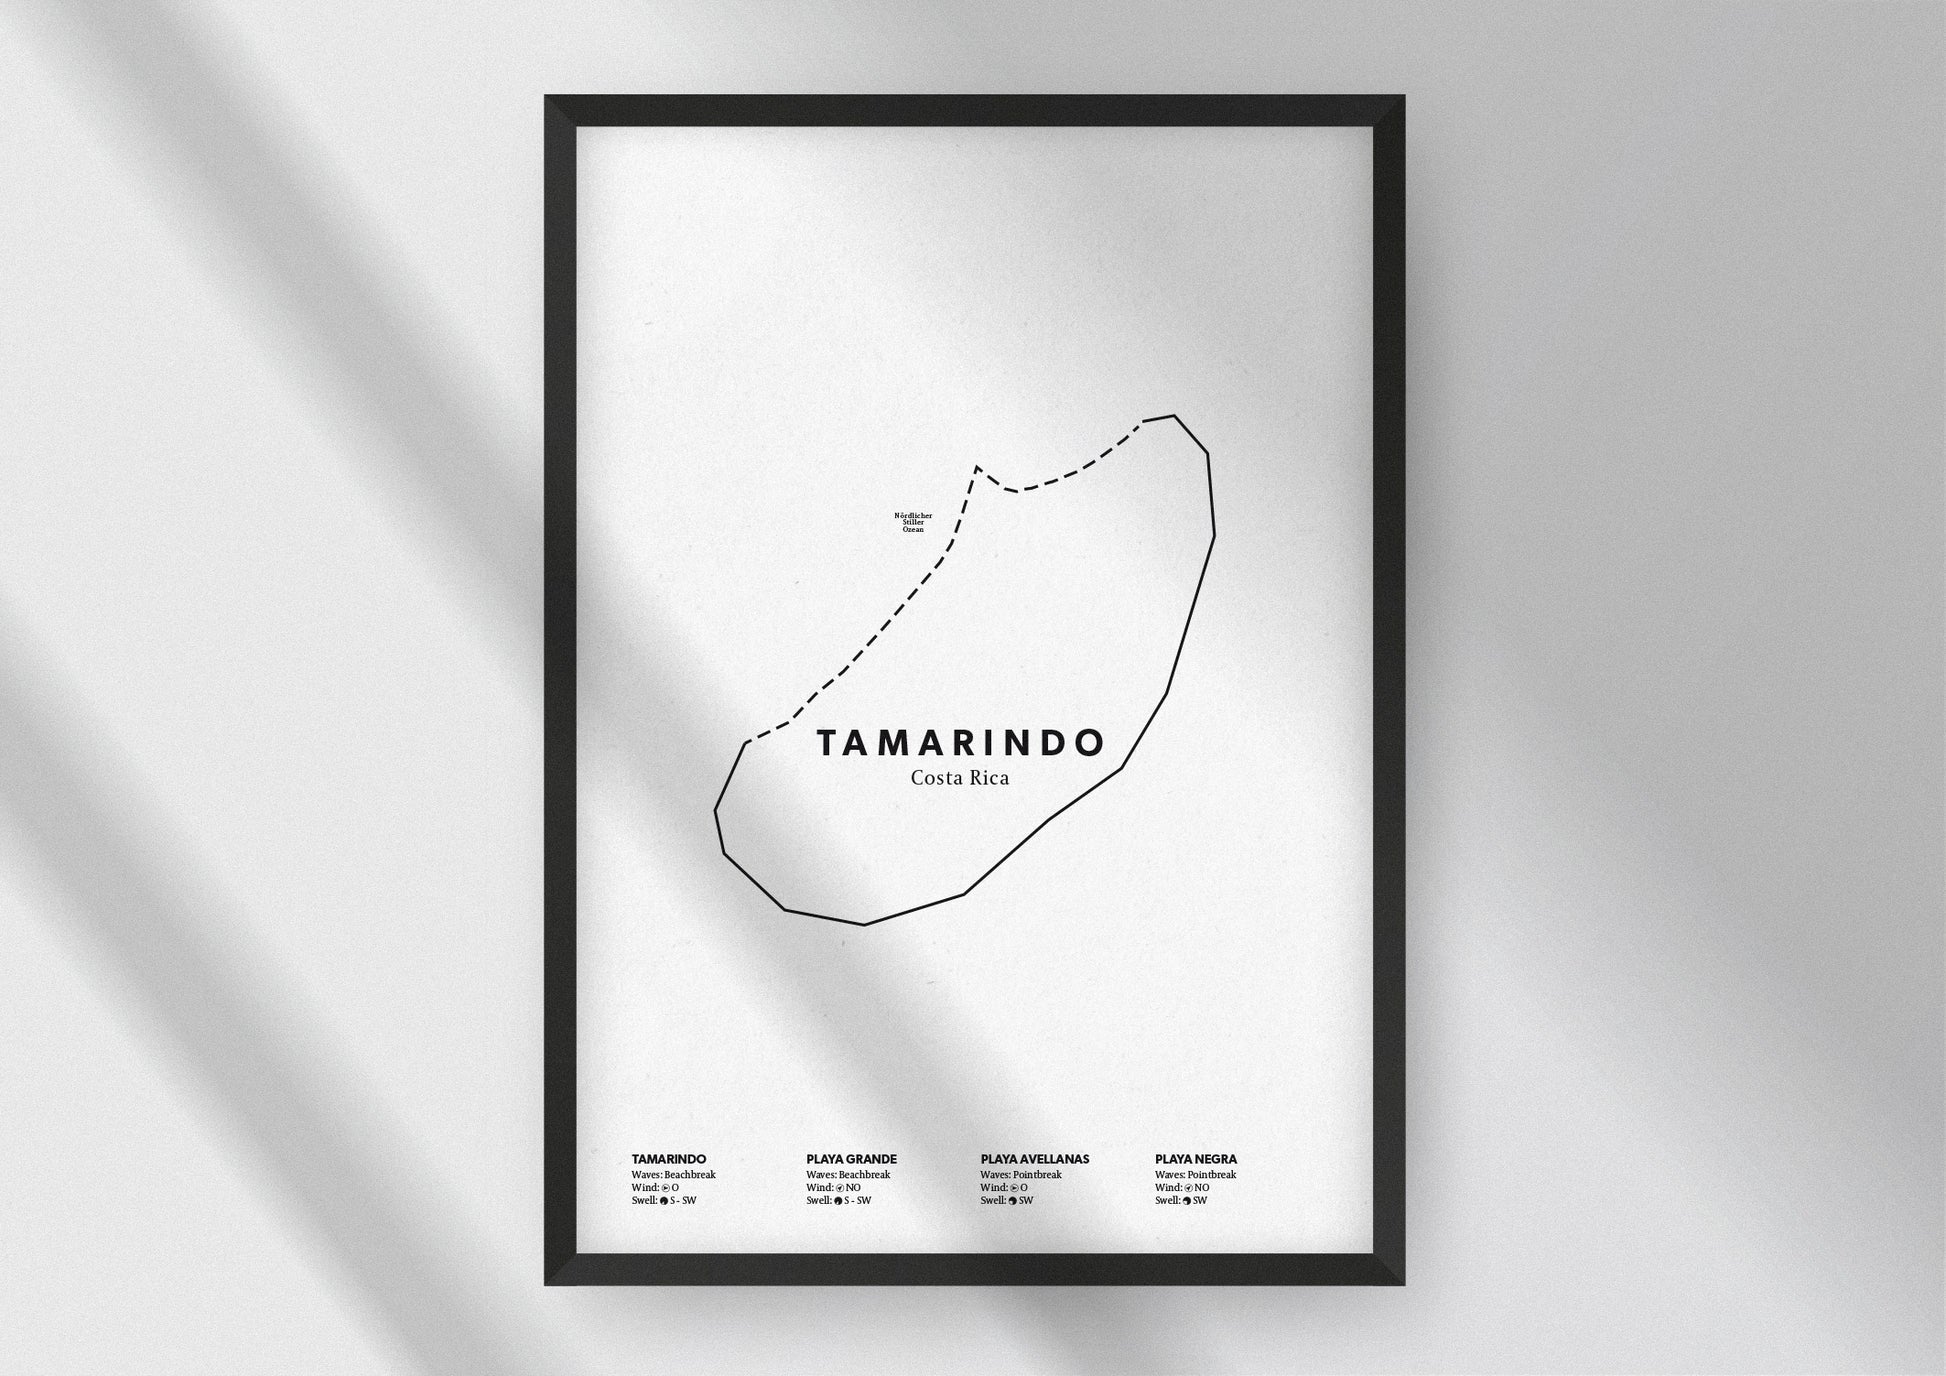 Minimalistische Illustration der Karte von Tamarindo in Costa Rica, mit Markierung der Küste sowie vier Surfhotspots der Region, als stilvoller Einrichtungsgegenstand für Zuhause.